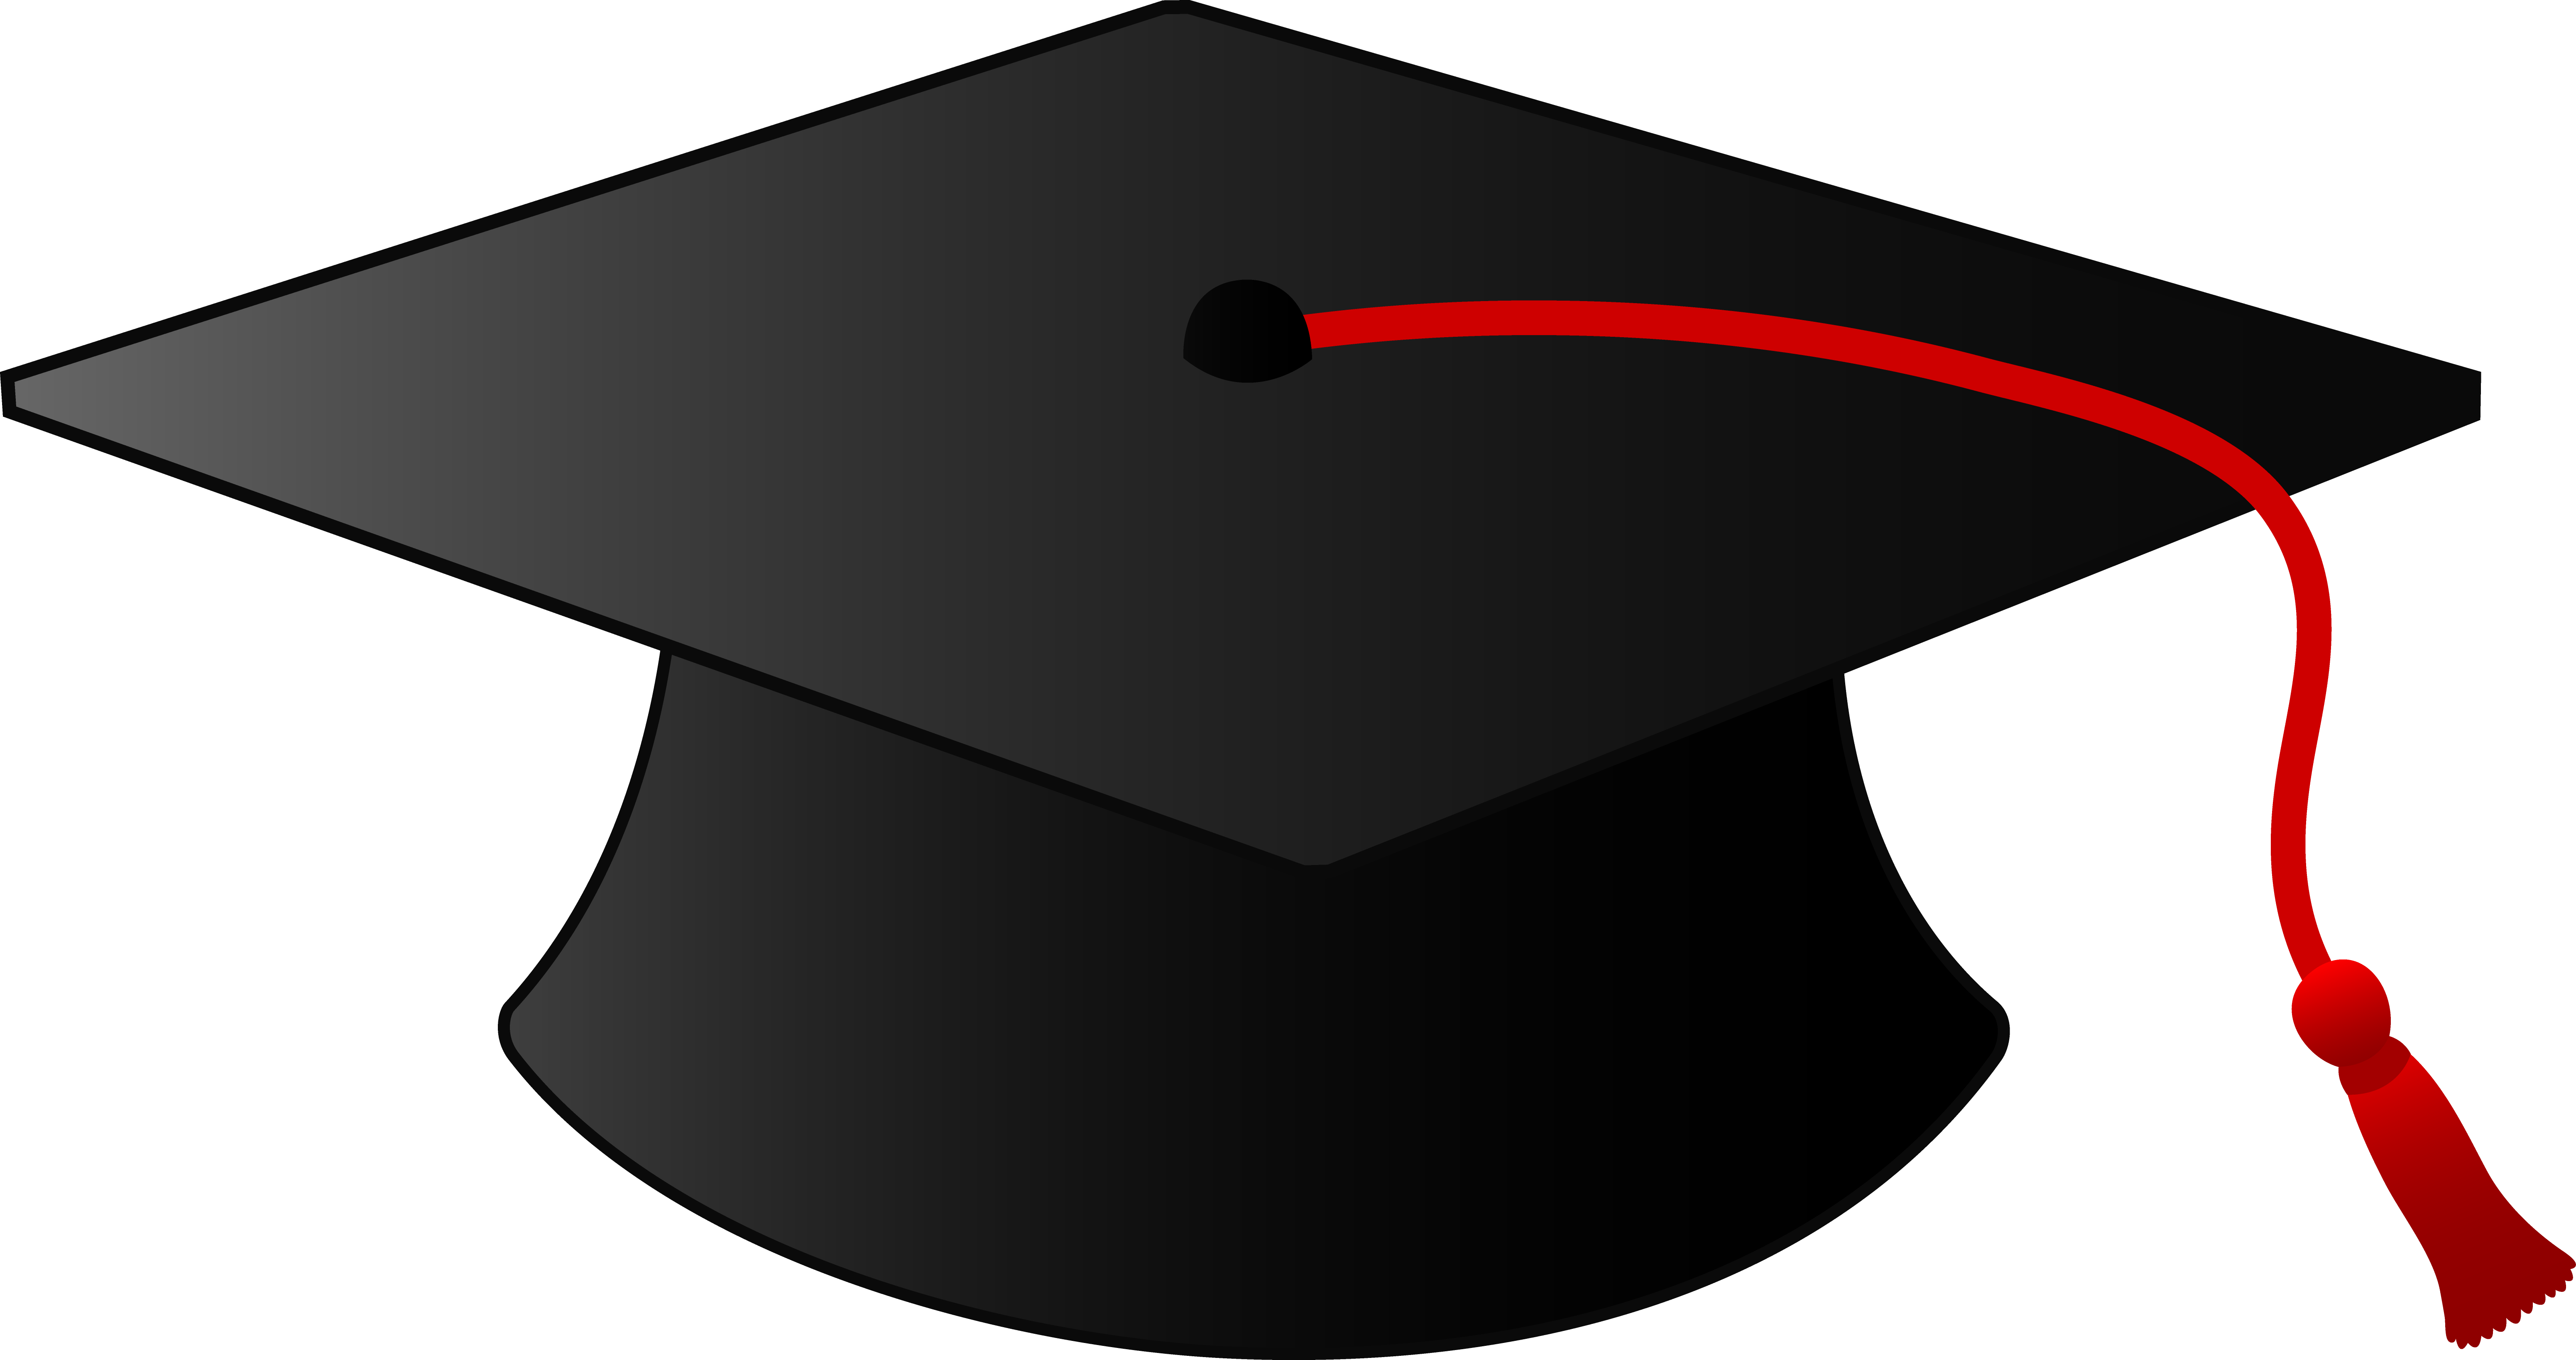 Pictures Of Graduation Caps - ClipArt Best